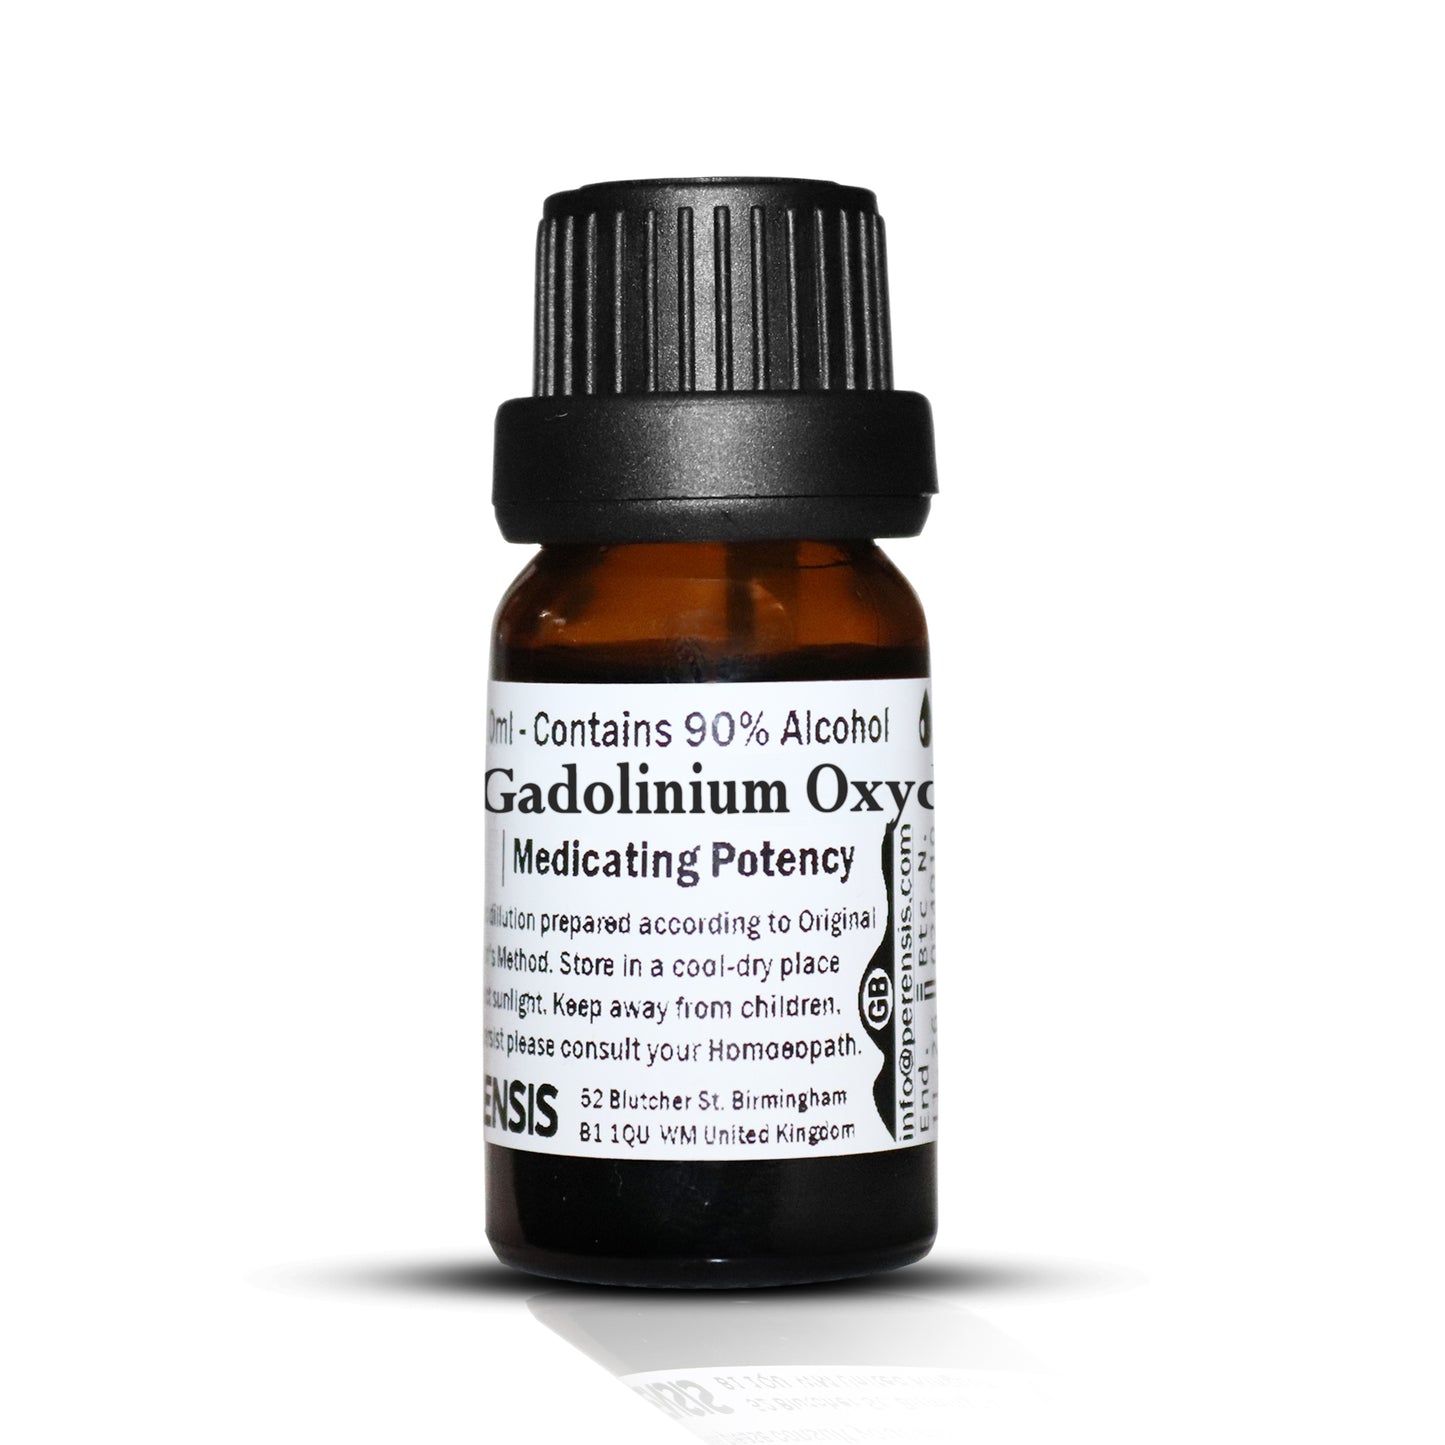 Gadolinium Oxyd.